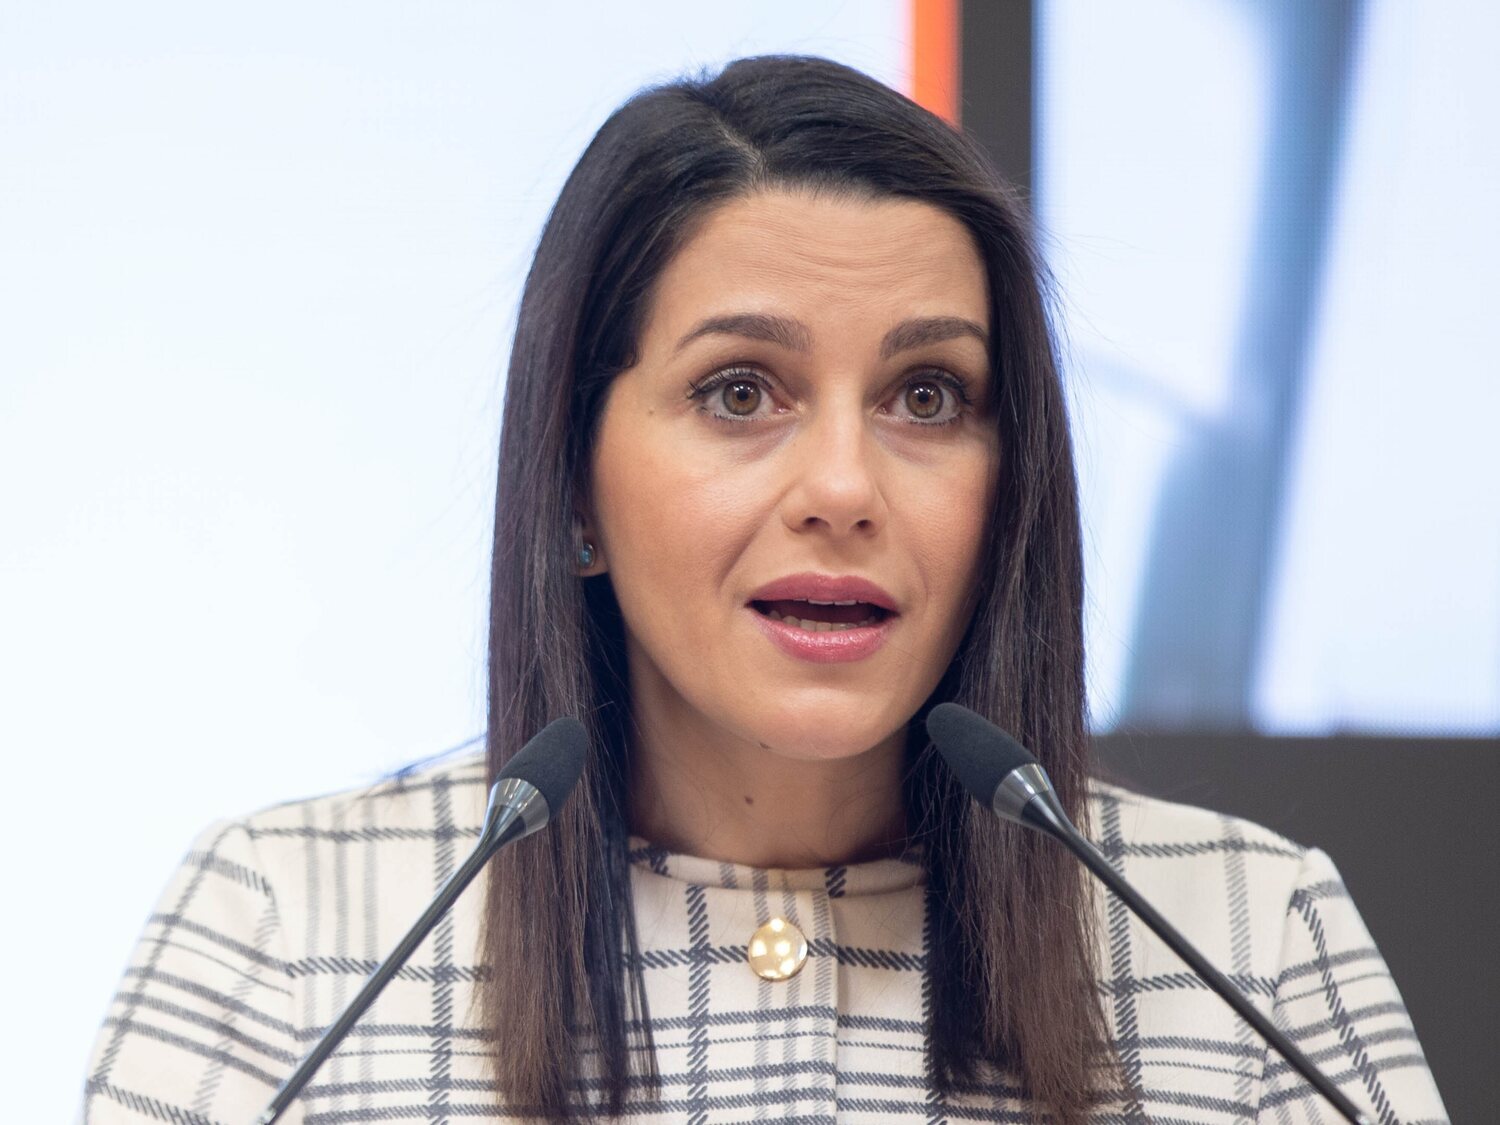 Inés Arrimadas anuncia su fichaje por una compañía energética como jefa de relaciones institucionales